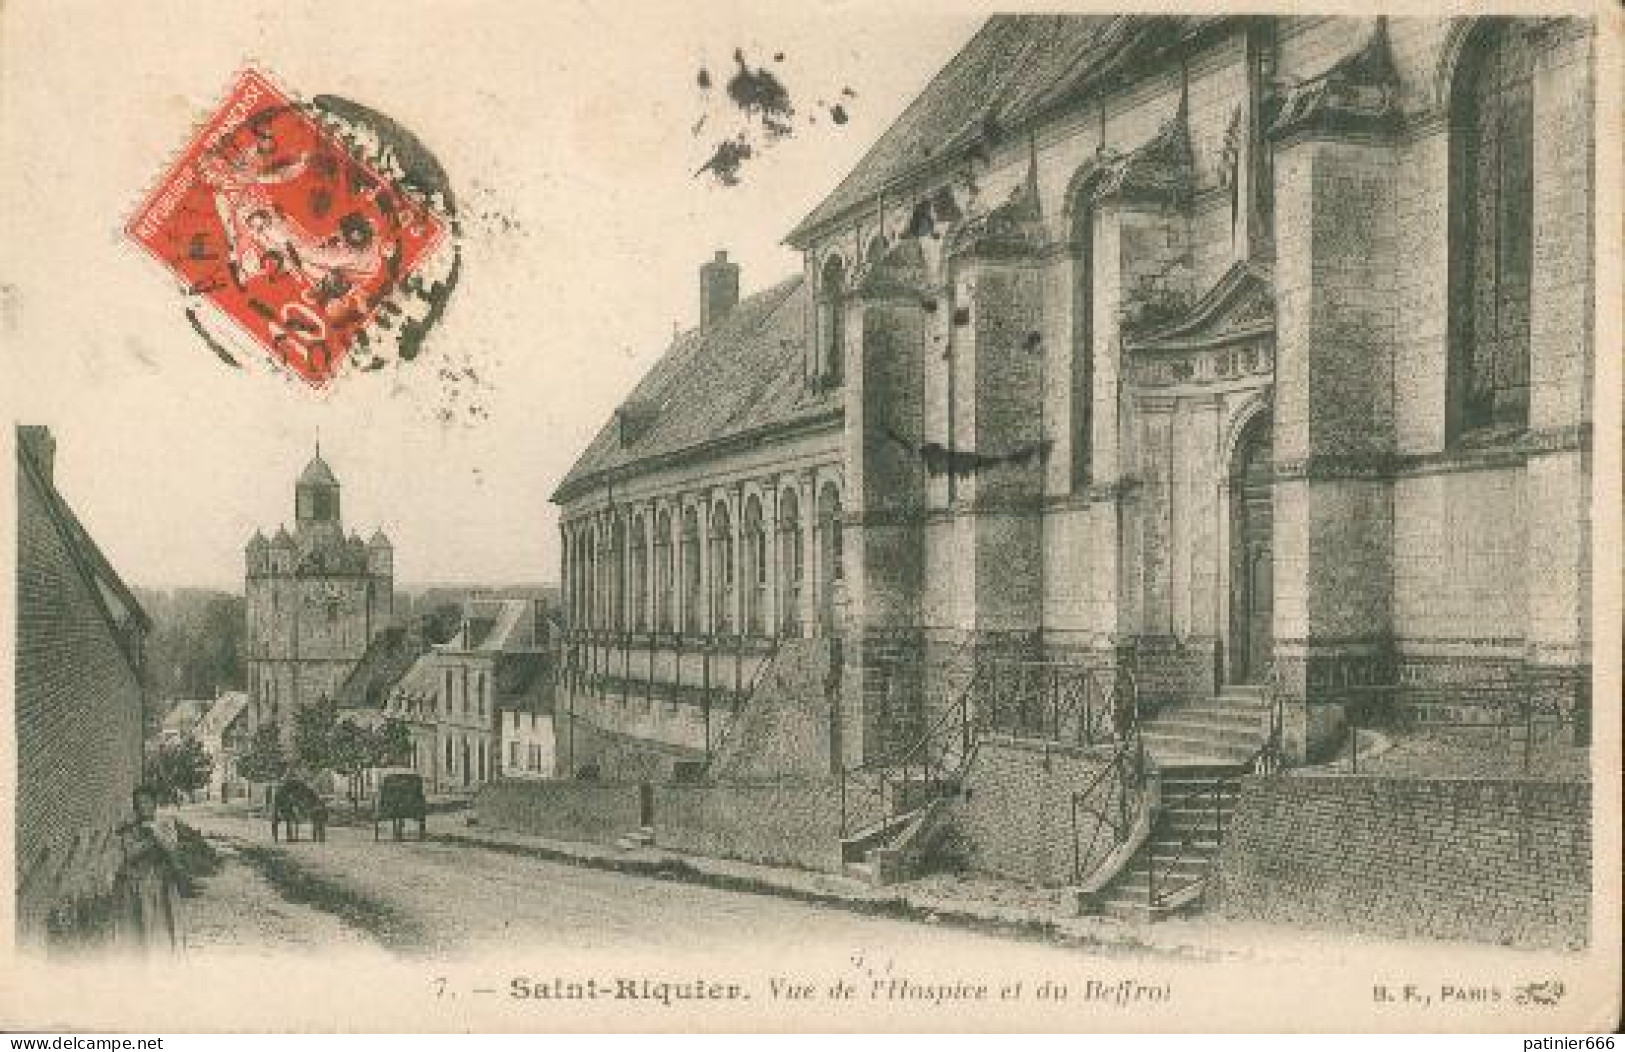 Saint Riquier - Saint Riquier